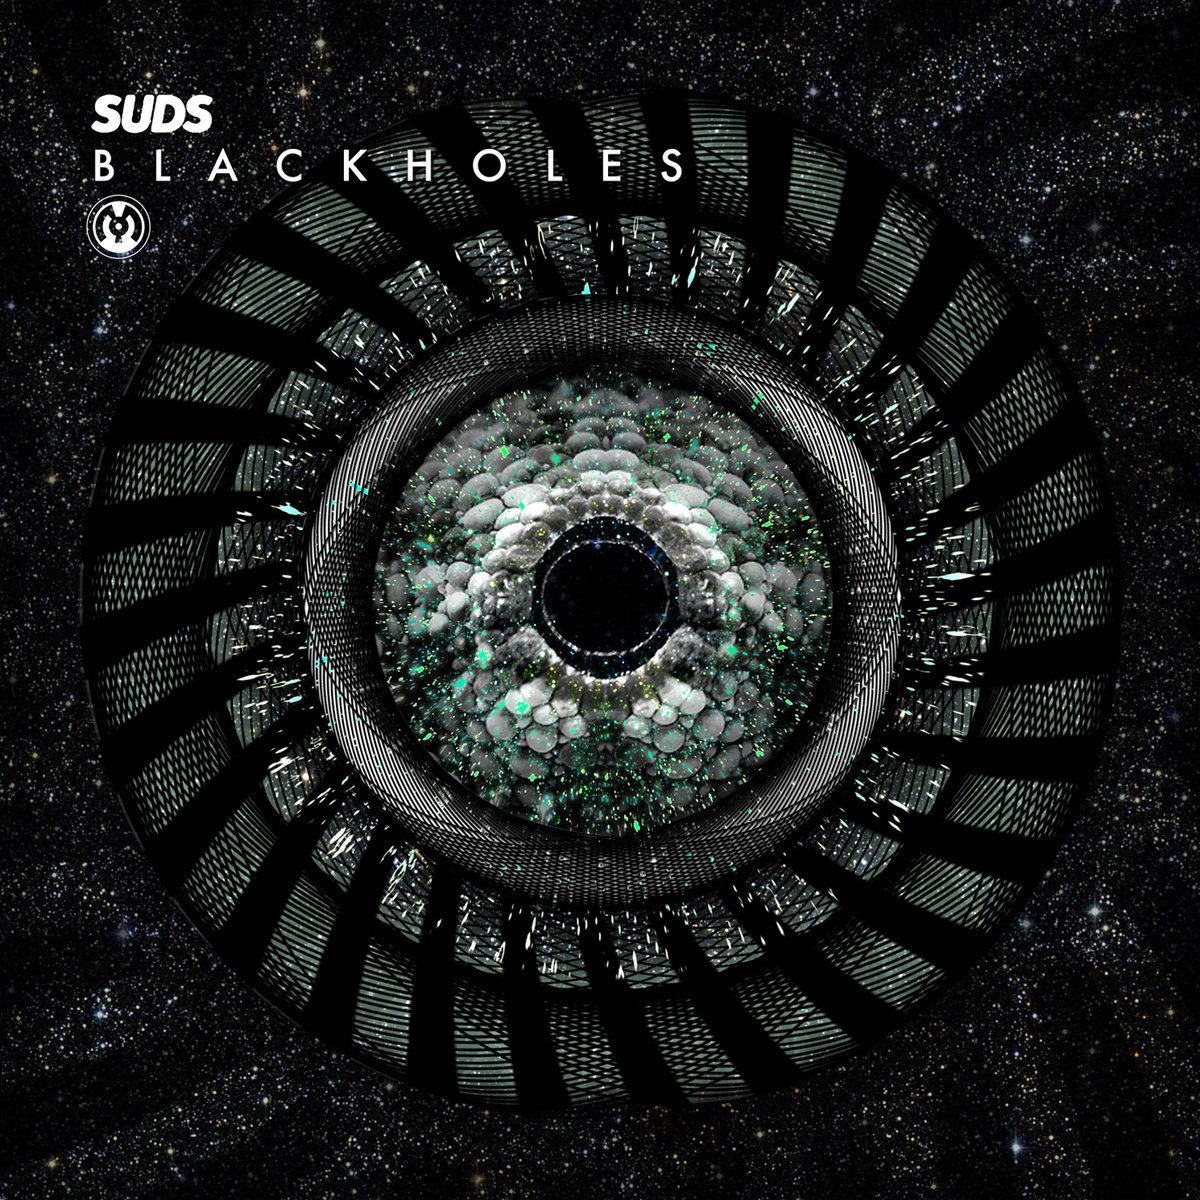 SuDs - Blackholes @ 'Blackholes' album (electronic, dubstep)